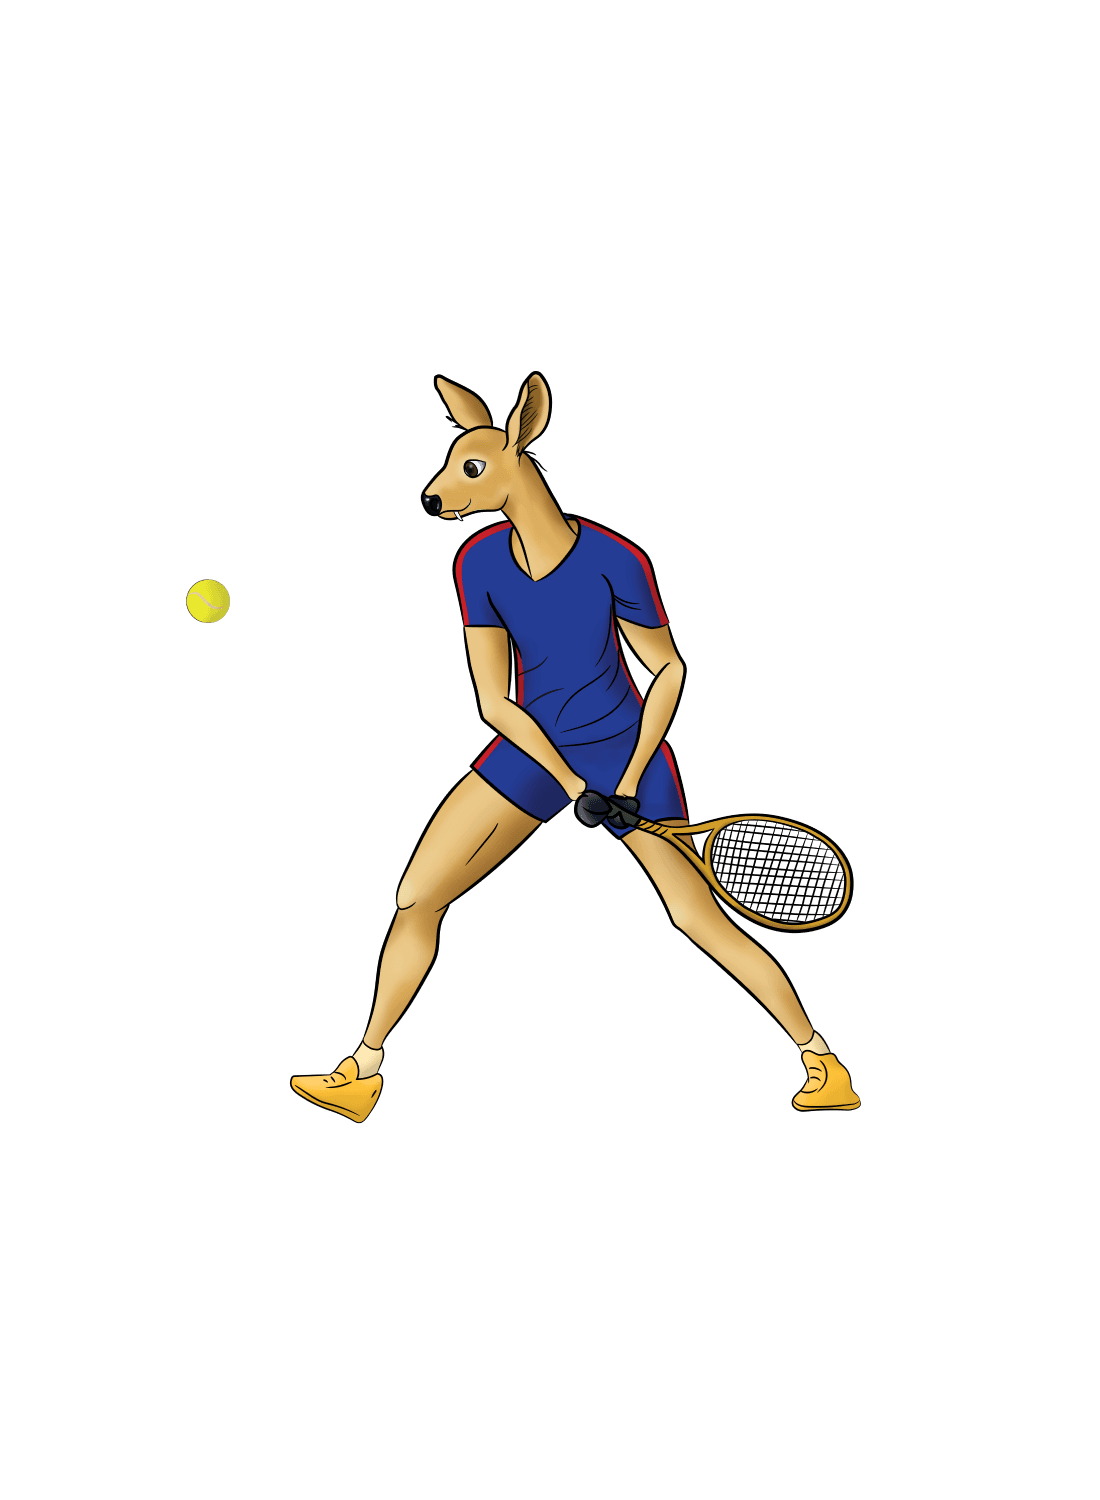 सफ्ट टेनिस महिला पुरुष डबल्स